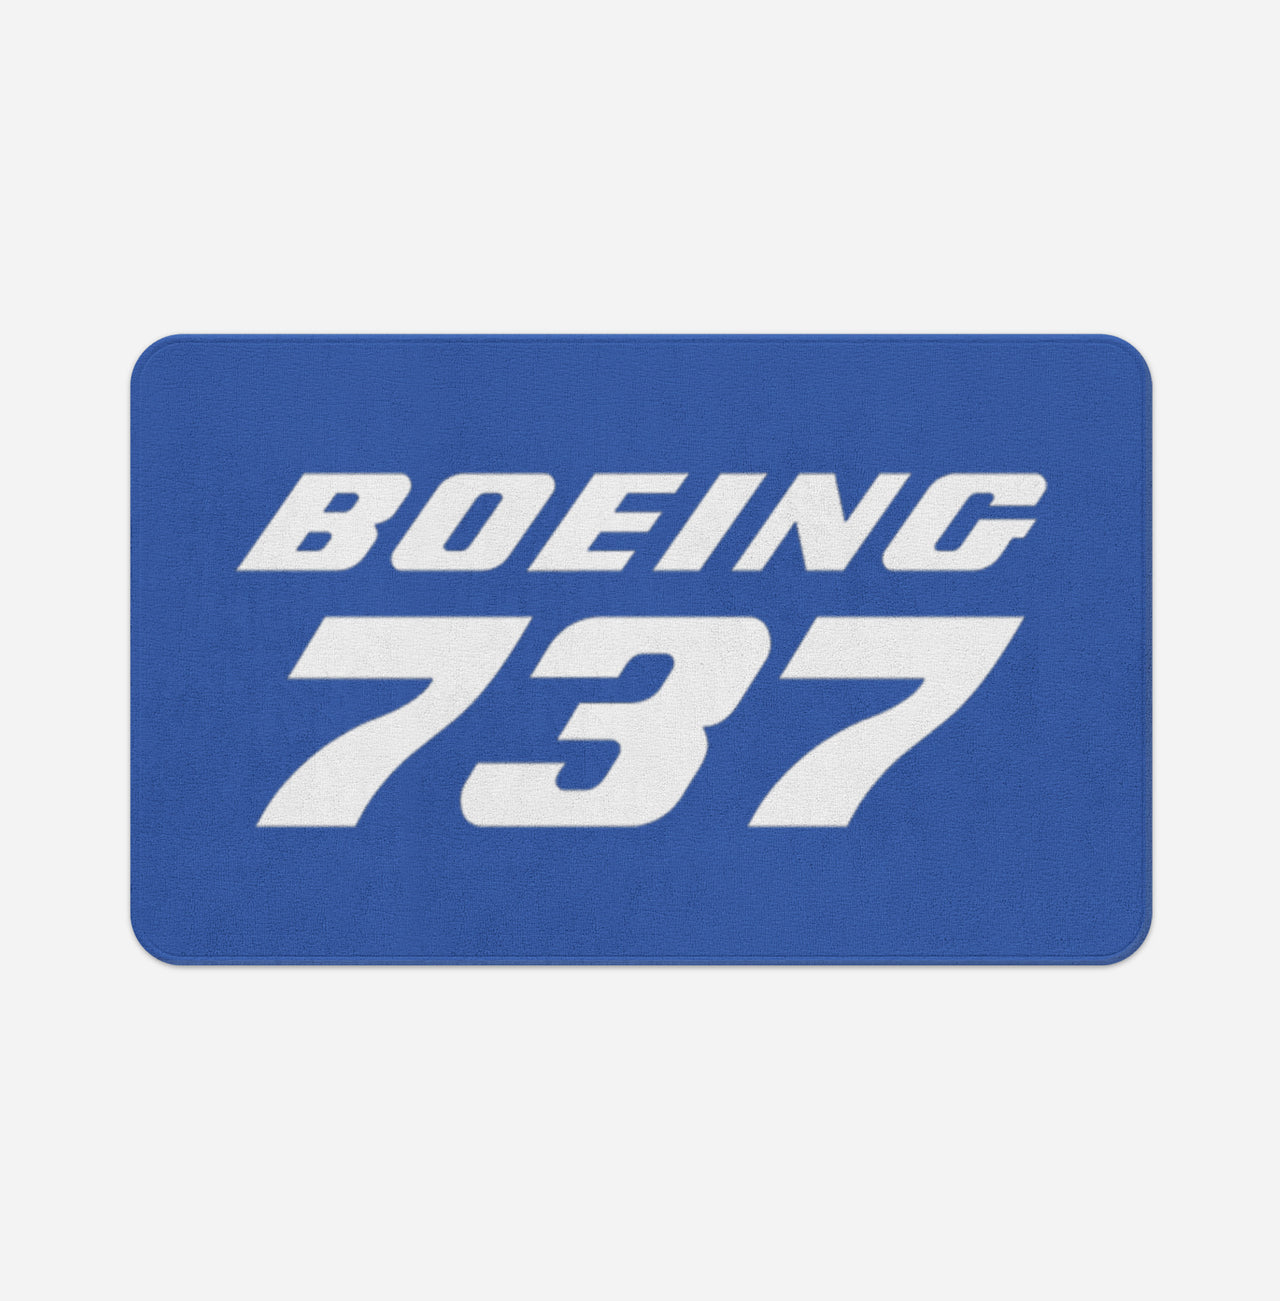 Boeing 737 & Text Designed Bath Mats